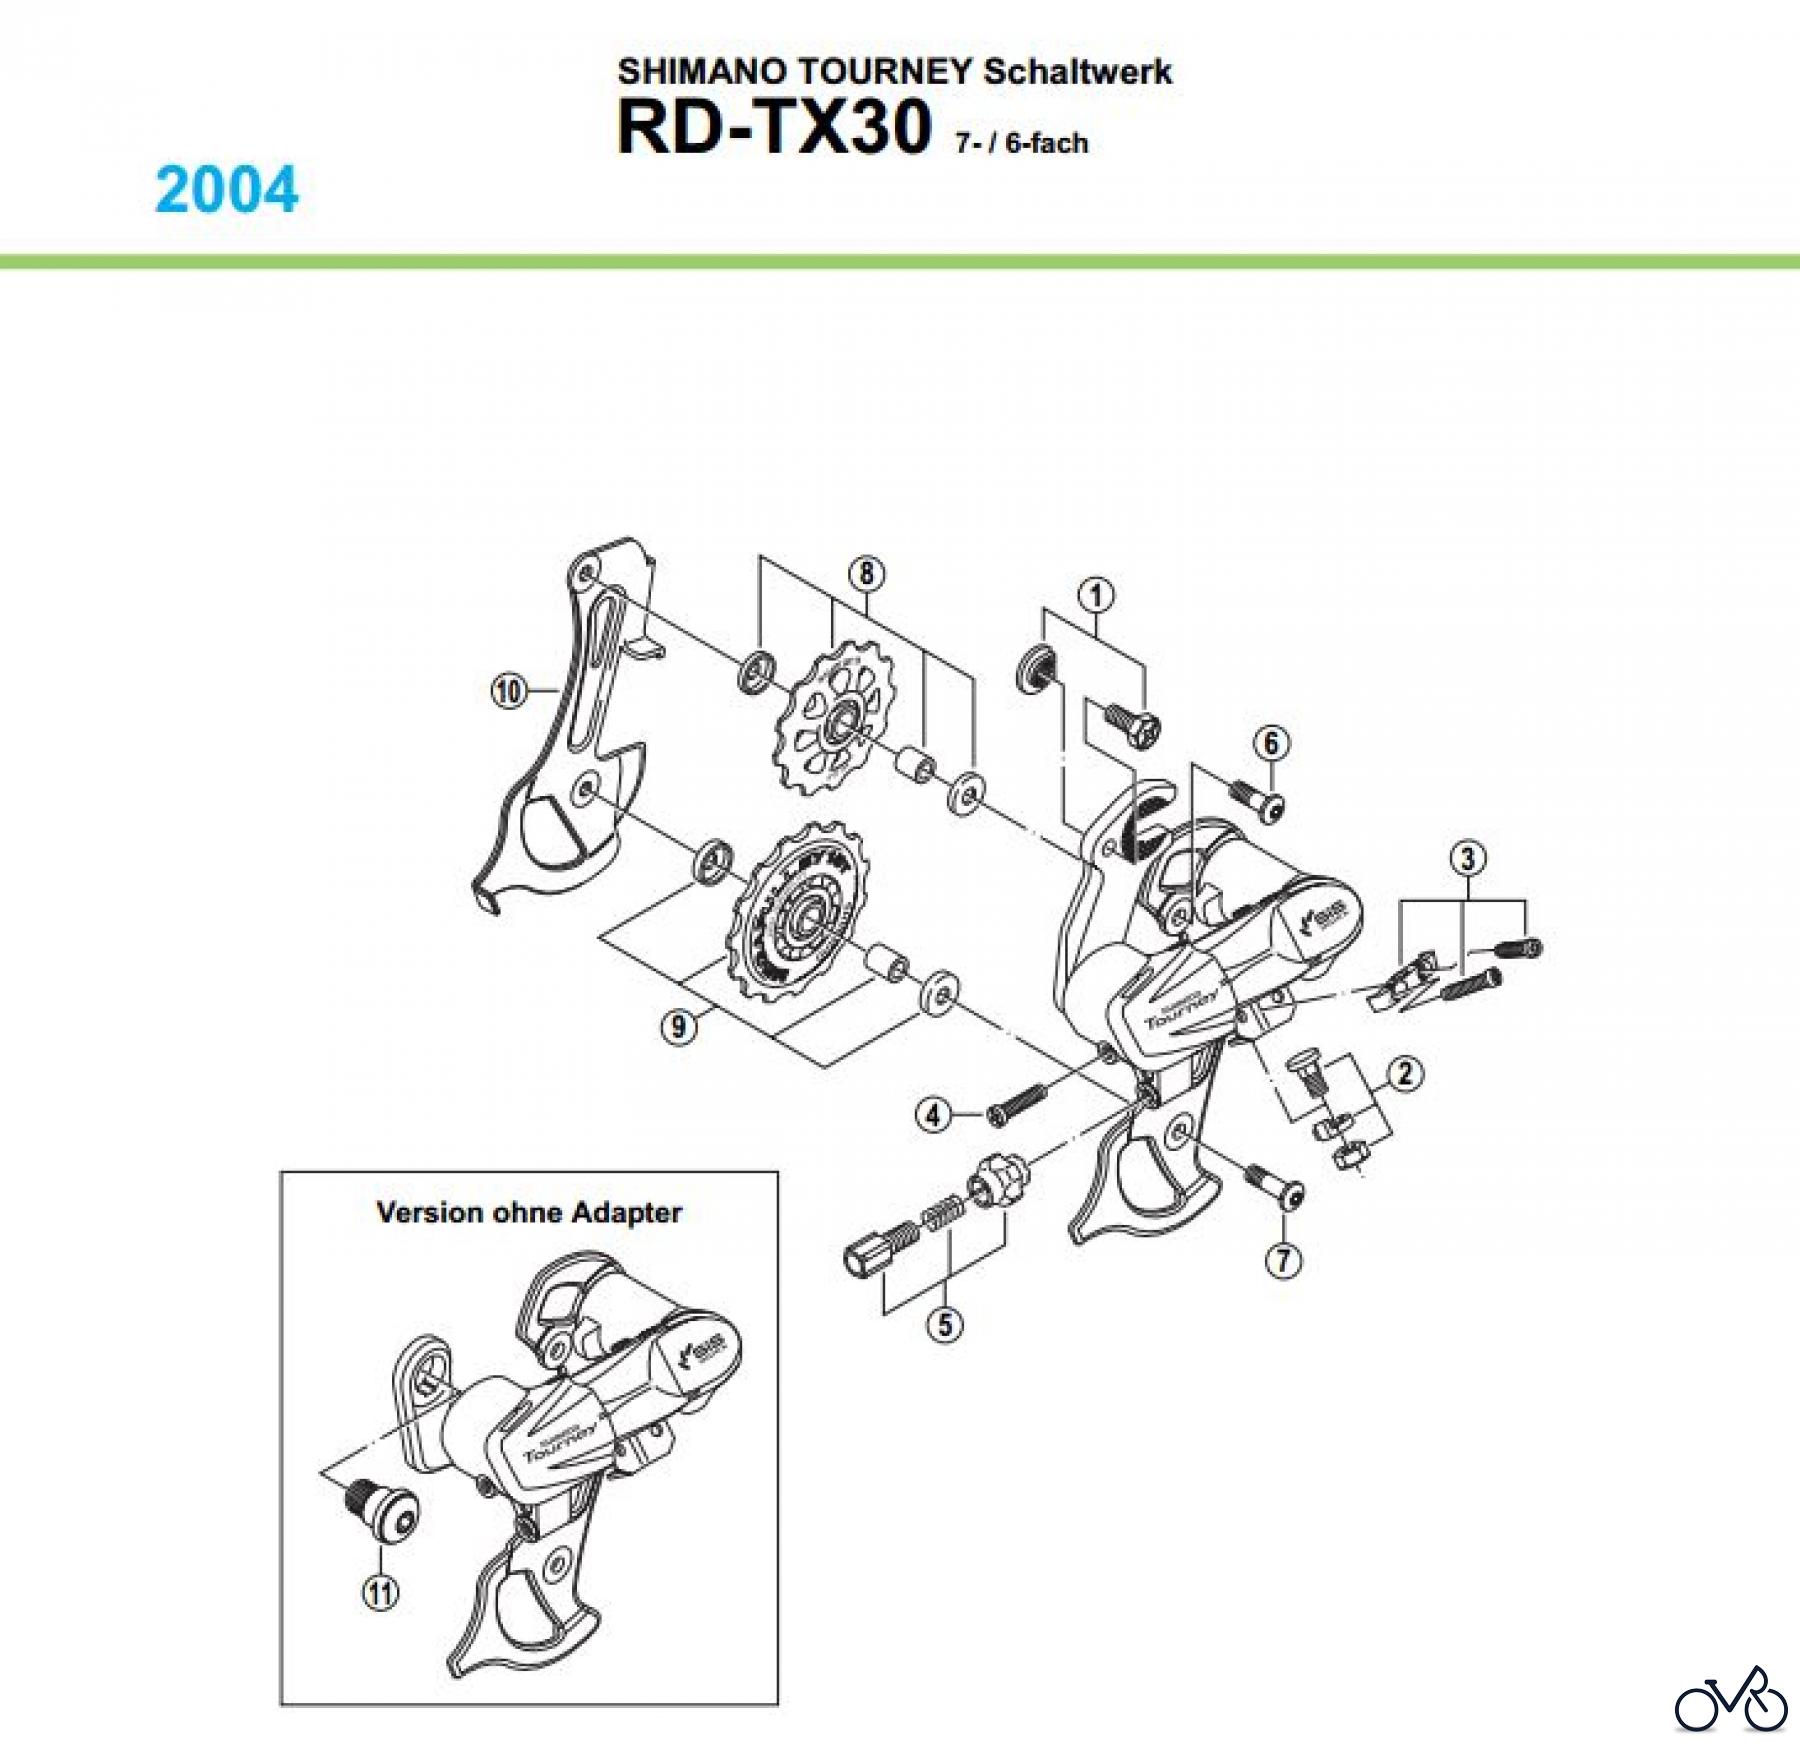  Shimano RD Rear Derailleur - Schaltwerk RD-TX30-04